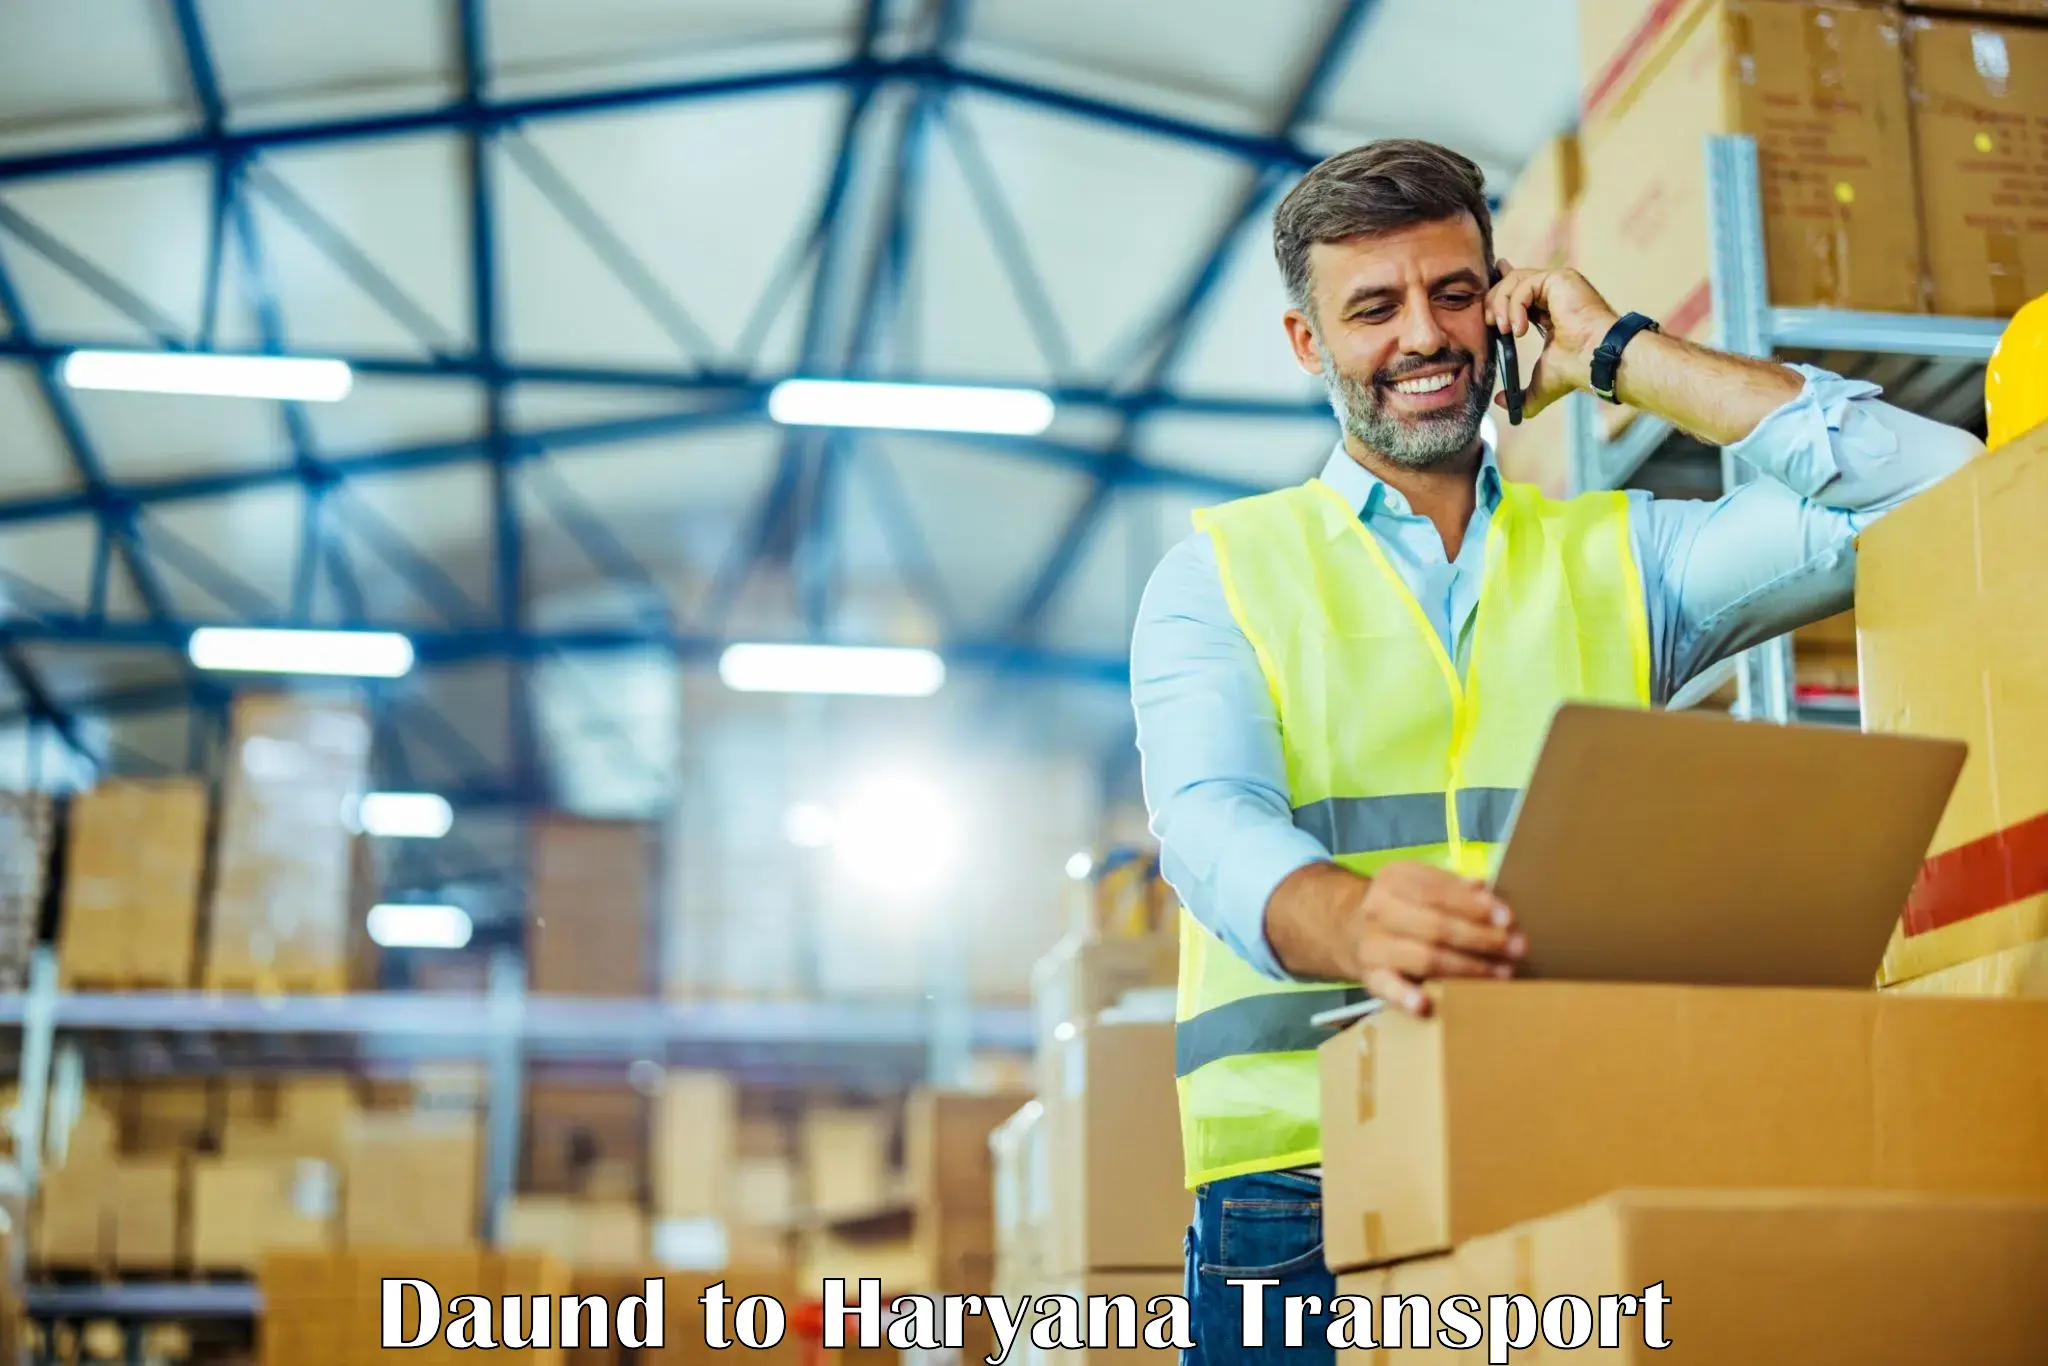 Shipping partner Daund to Hansi